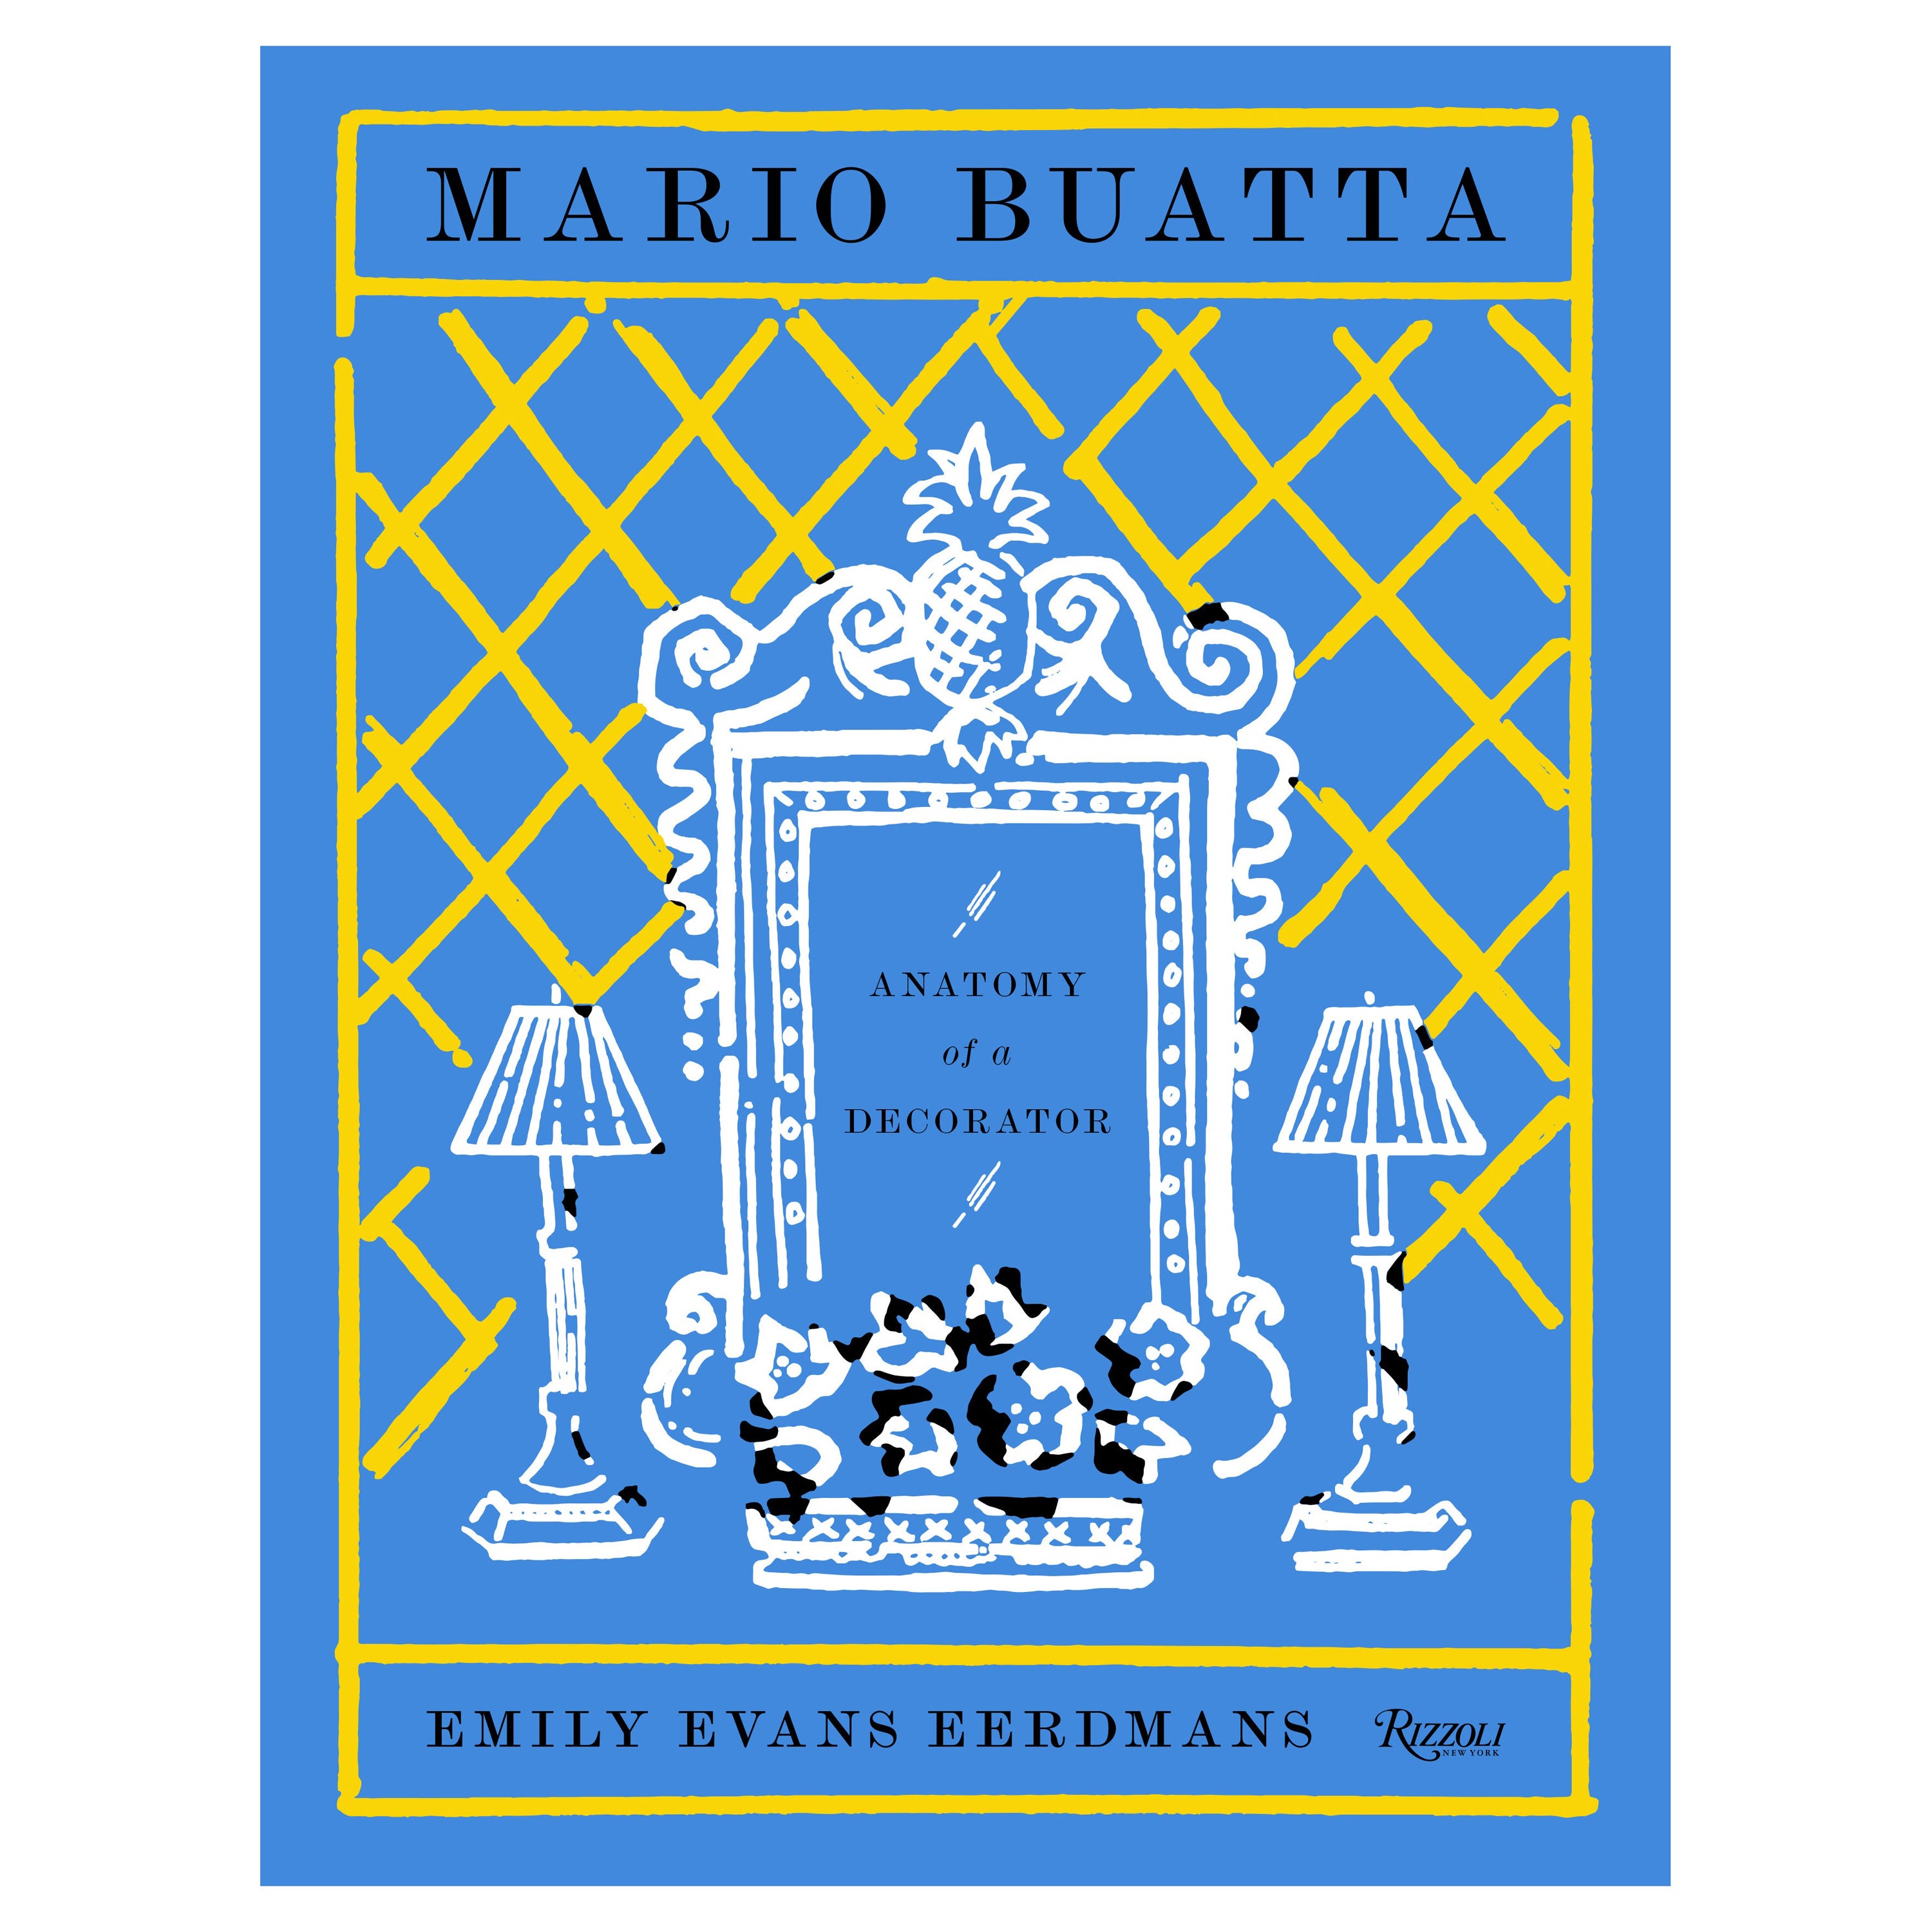 Mario Buatta: Anatomy of a Decorator For Sale